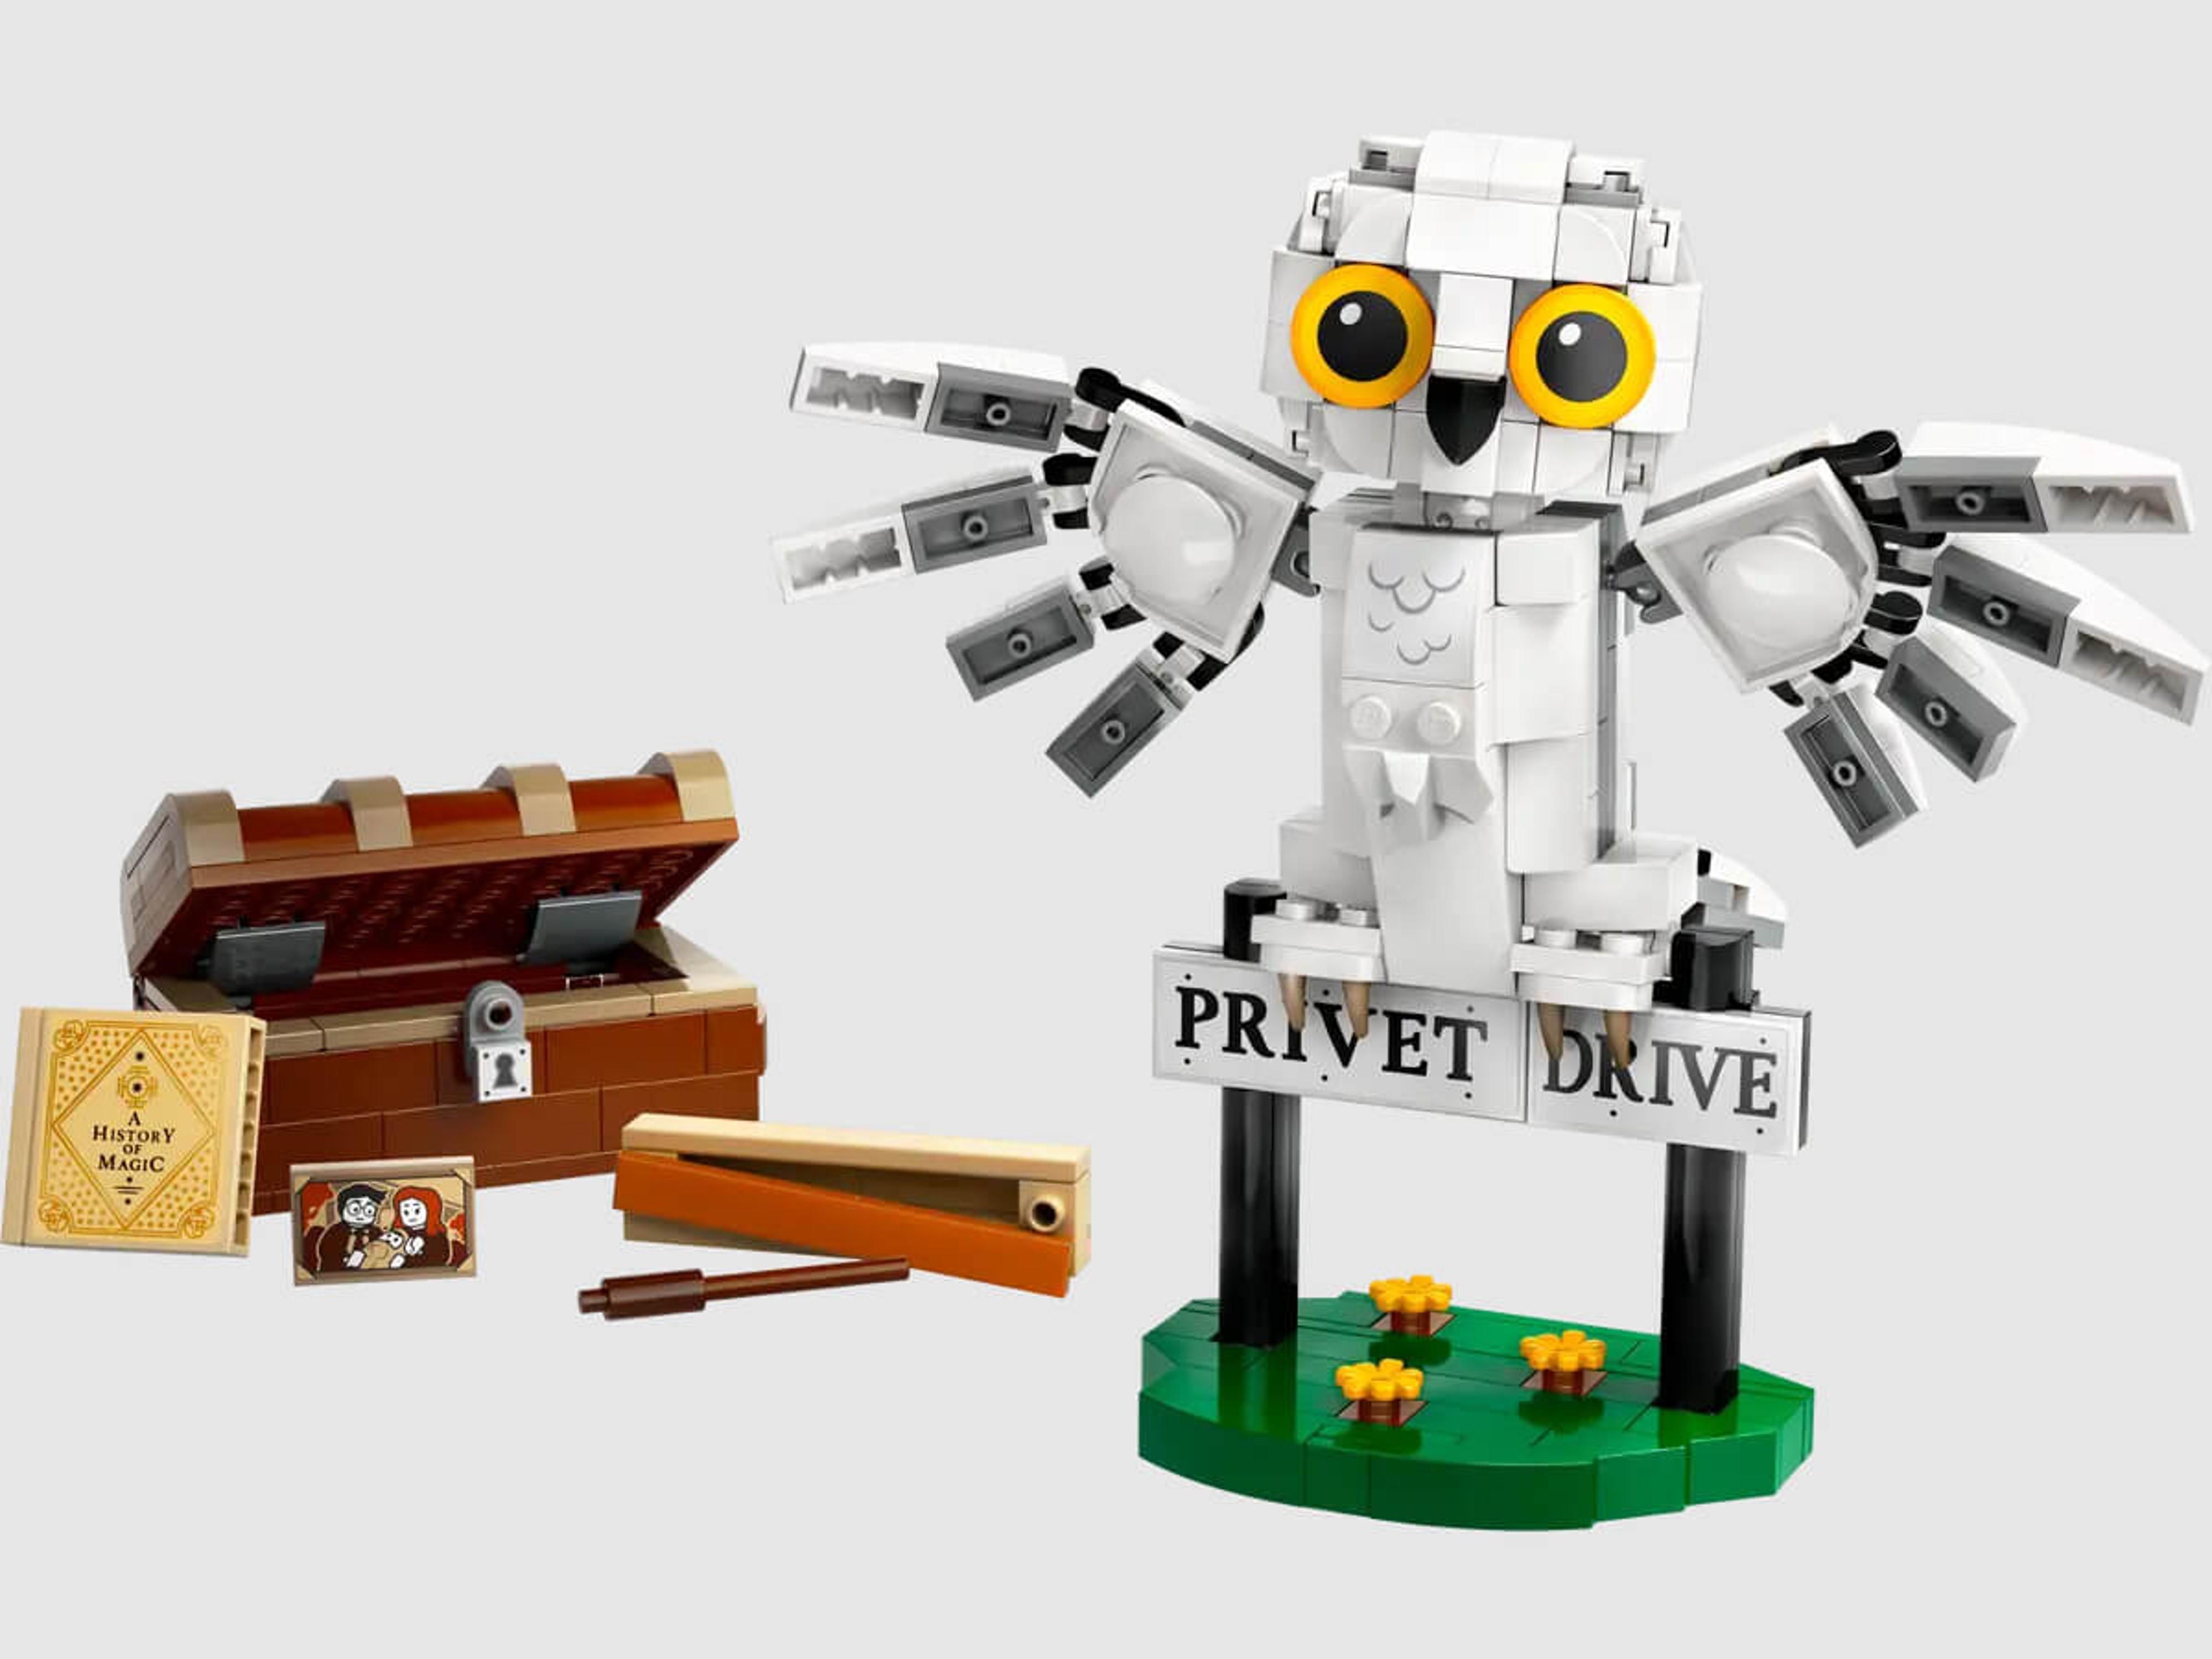 LEGO Harry Potter - Hedwig at 4 Privet Drive